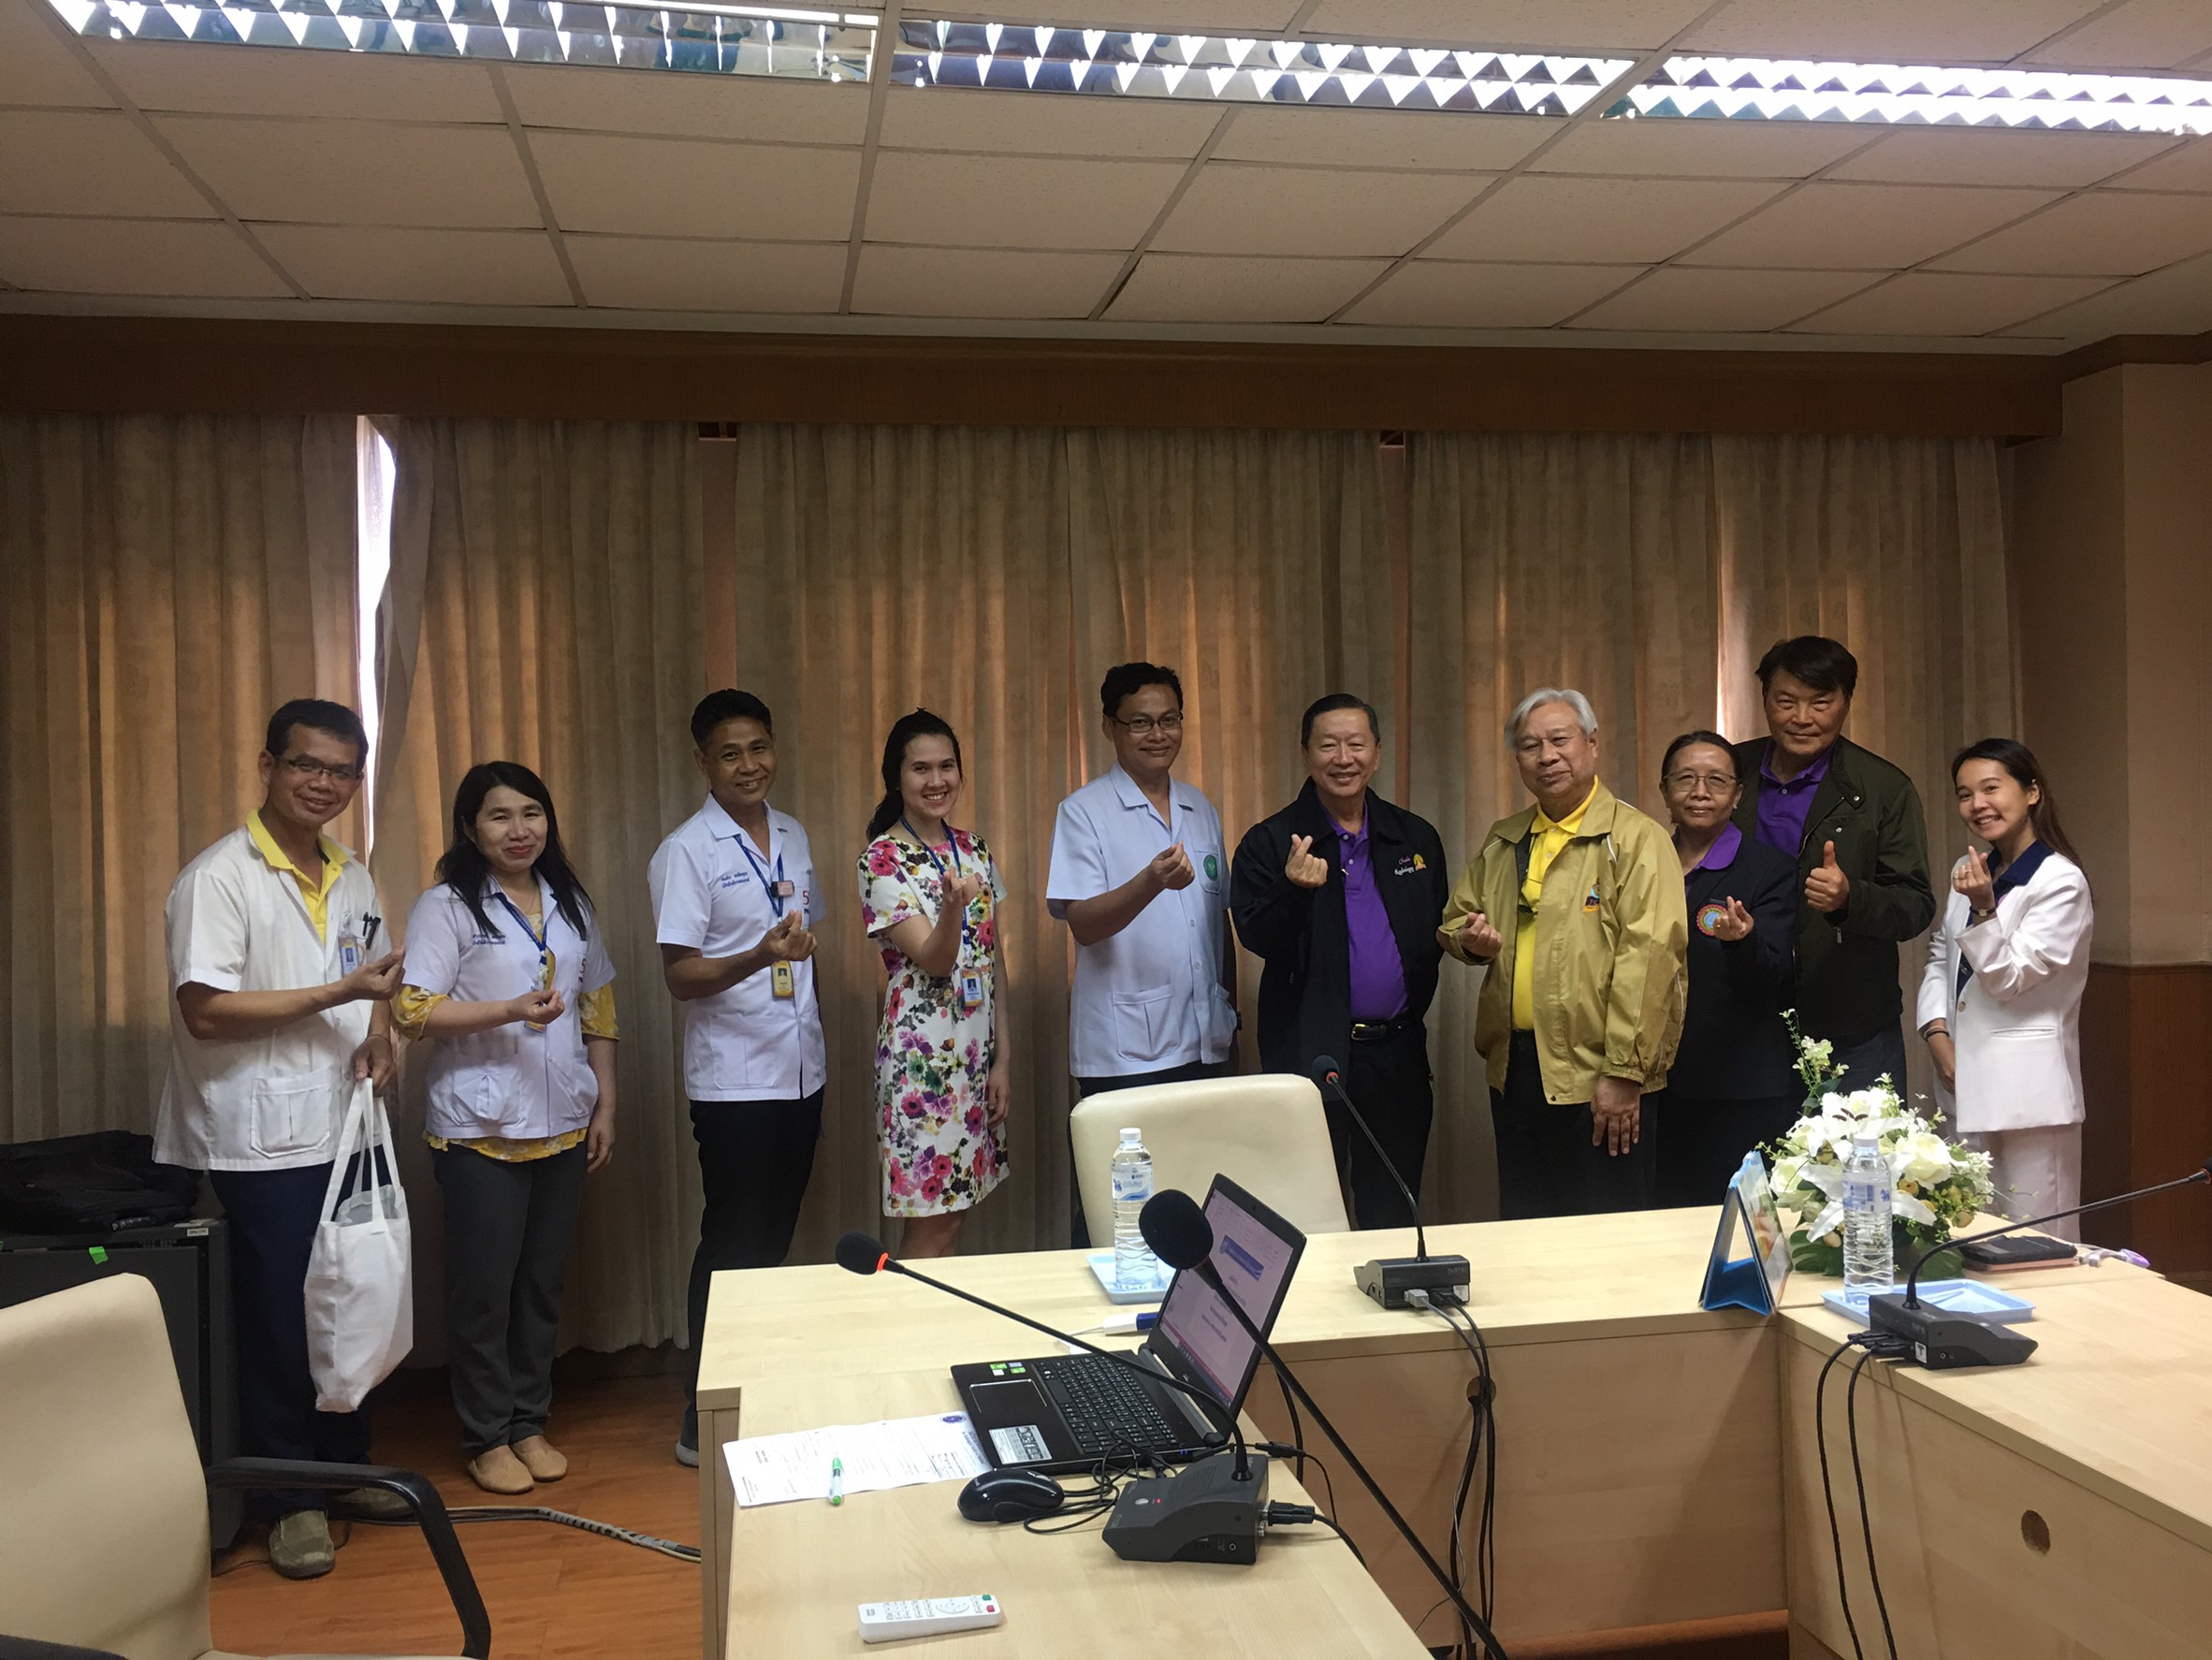 ประชุมวิชาการร่วมกับรังสีการแพทย์แห่งประเทศไทย ครั้งที่17 27-29 พ.ย. - พร้อมเข้าเยี่ยมและให้กำลังใจหน่วยงานรังสีวิทยาในพื้นที่จังหวัดอุบลราชธานีระหว่างวันที่ 25-26 พฤศจิกายน 2562 28